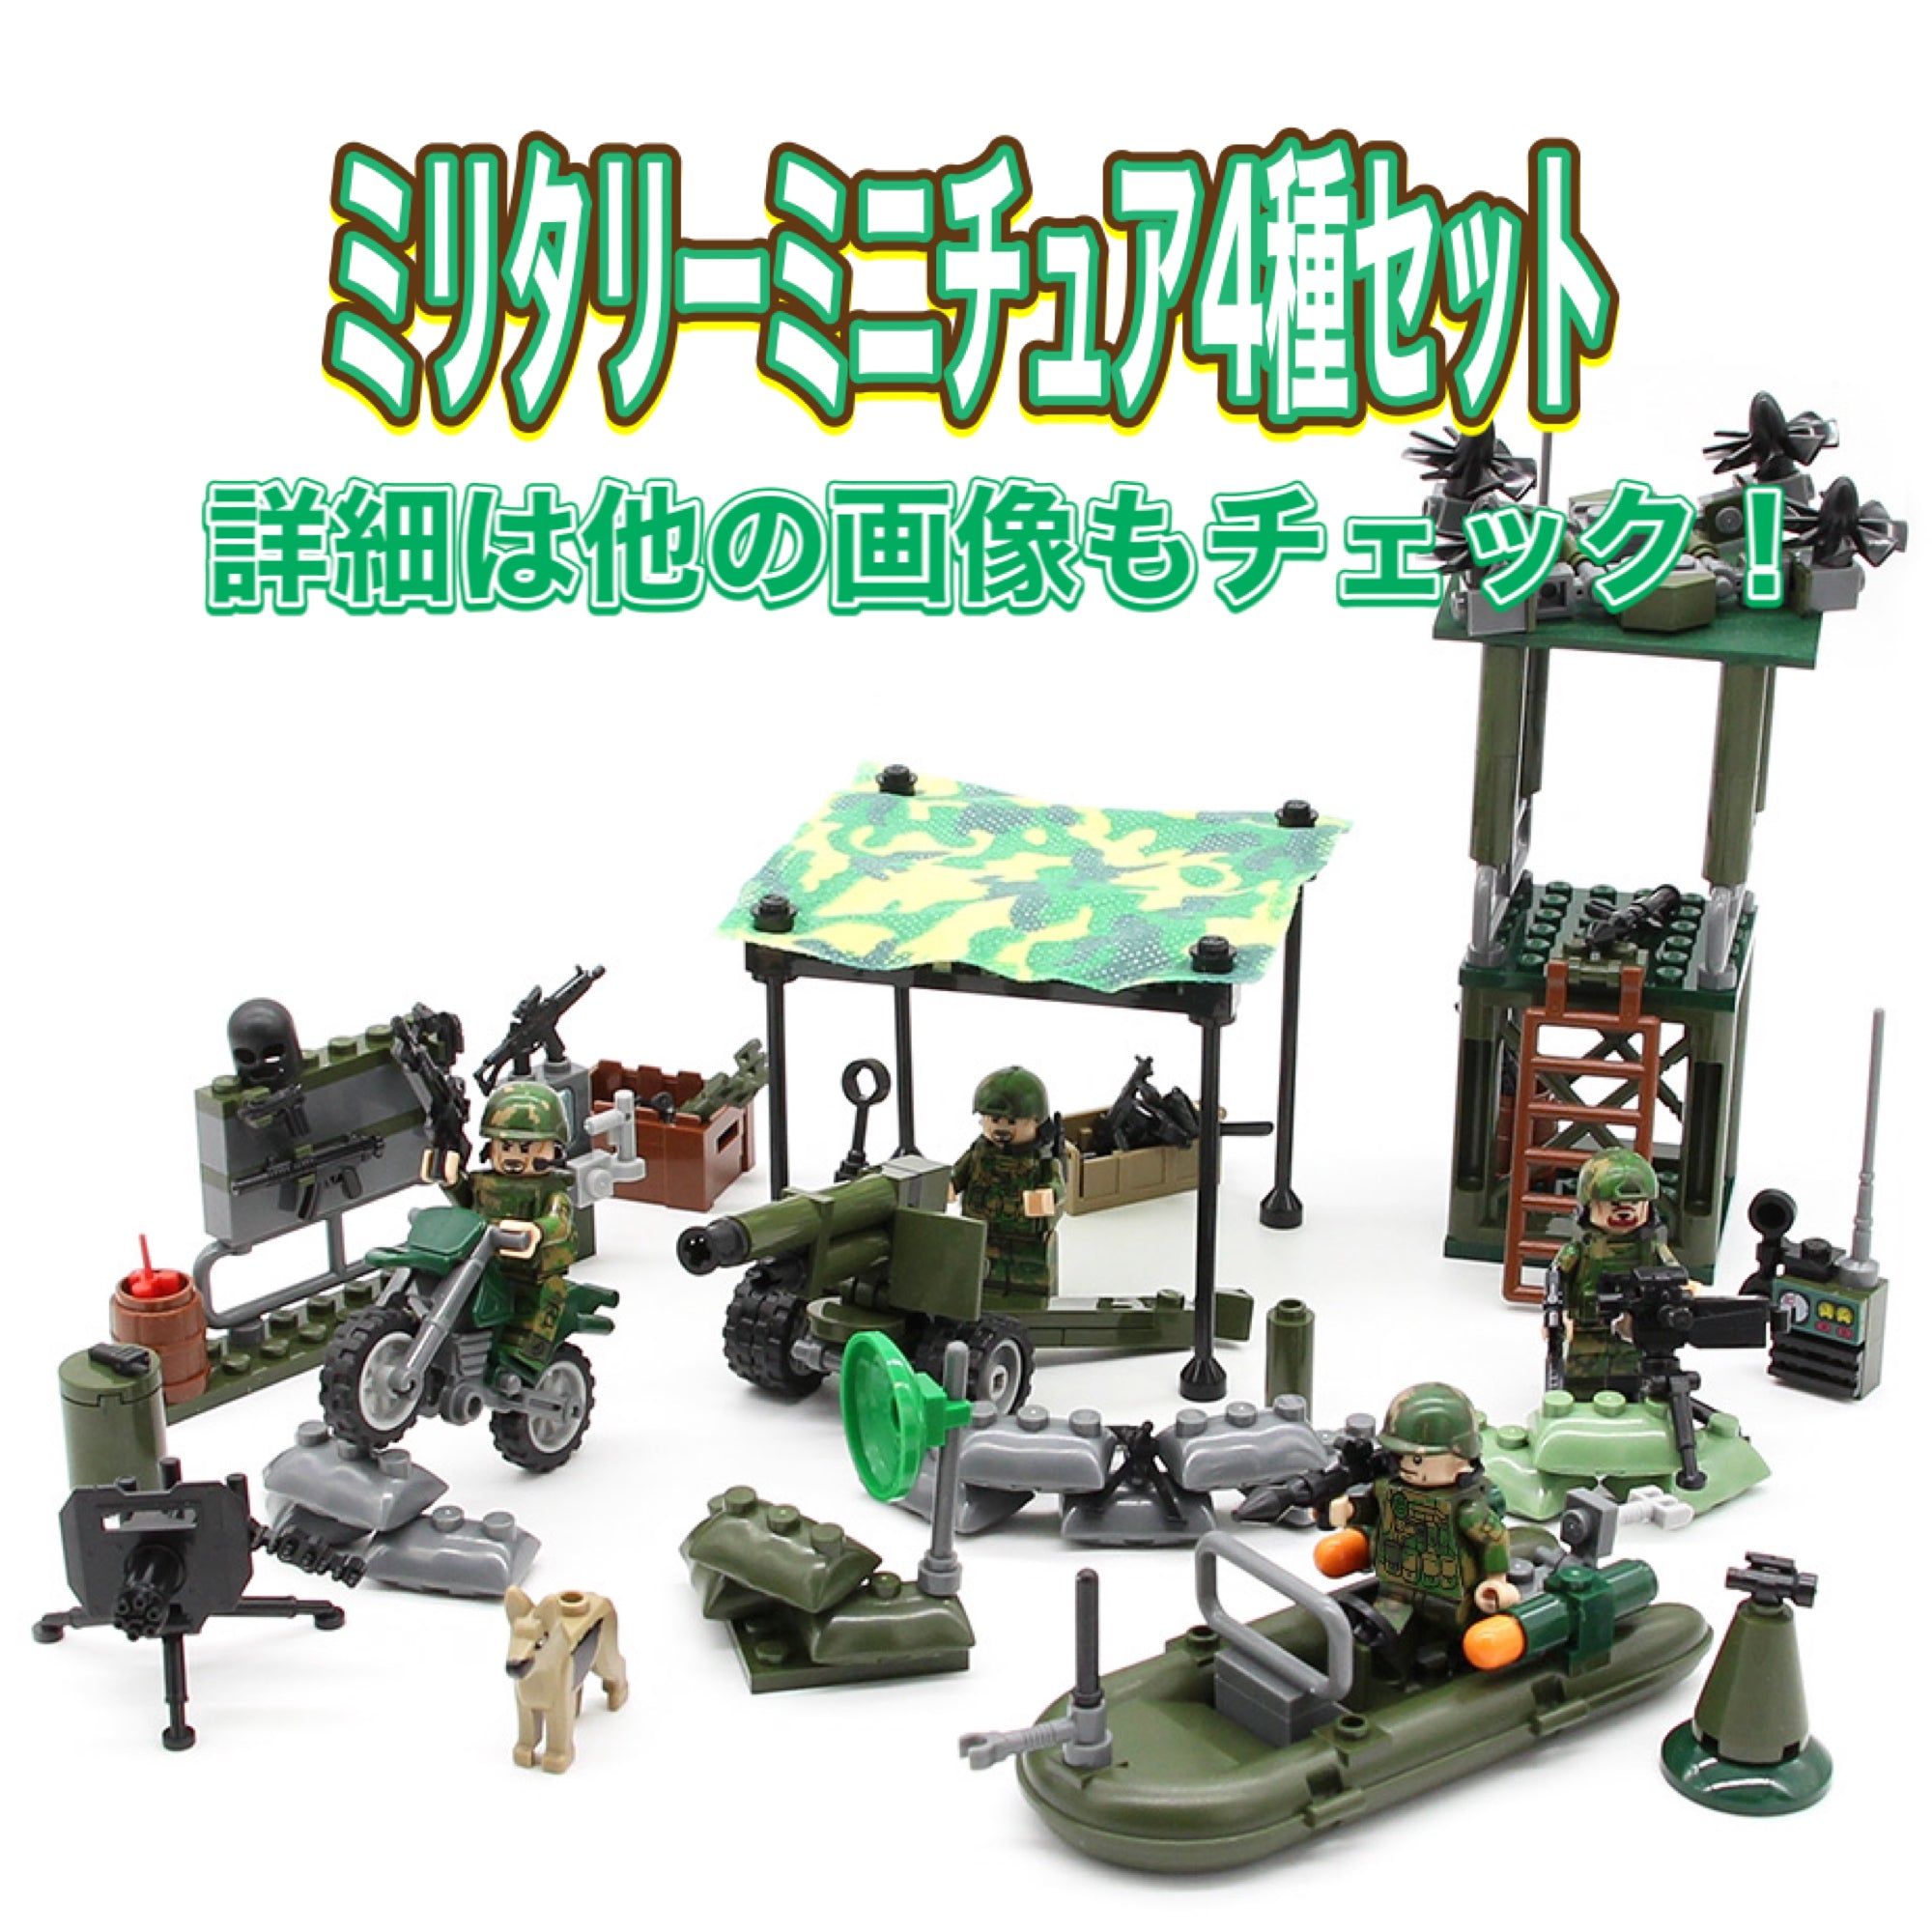 ブロックのおもちゃ レゴ互換 ミリタリーミニフィグシリーズ【U.S NAVY